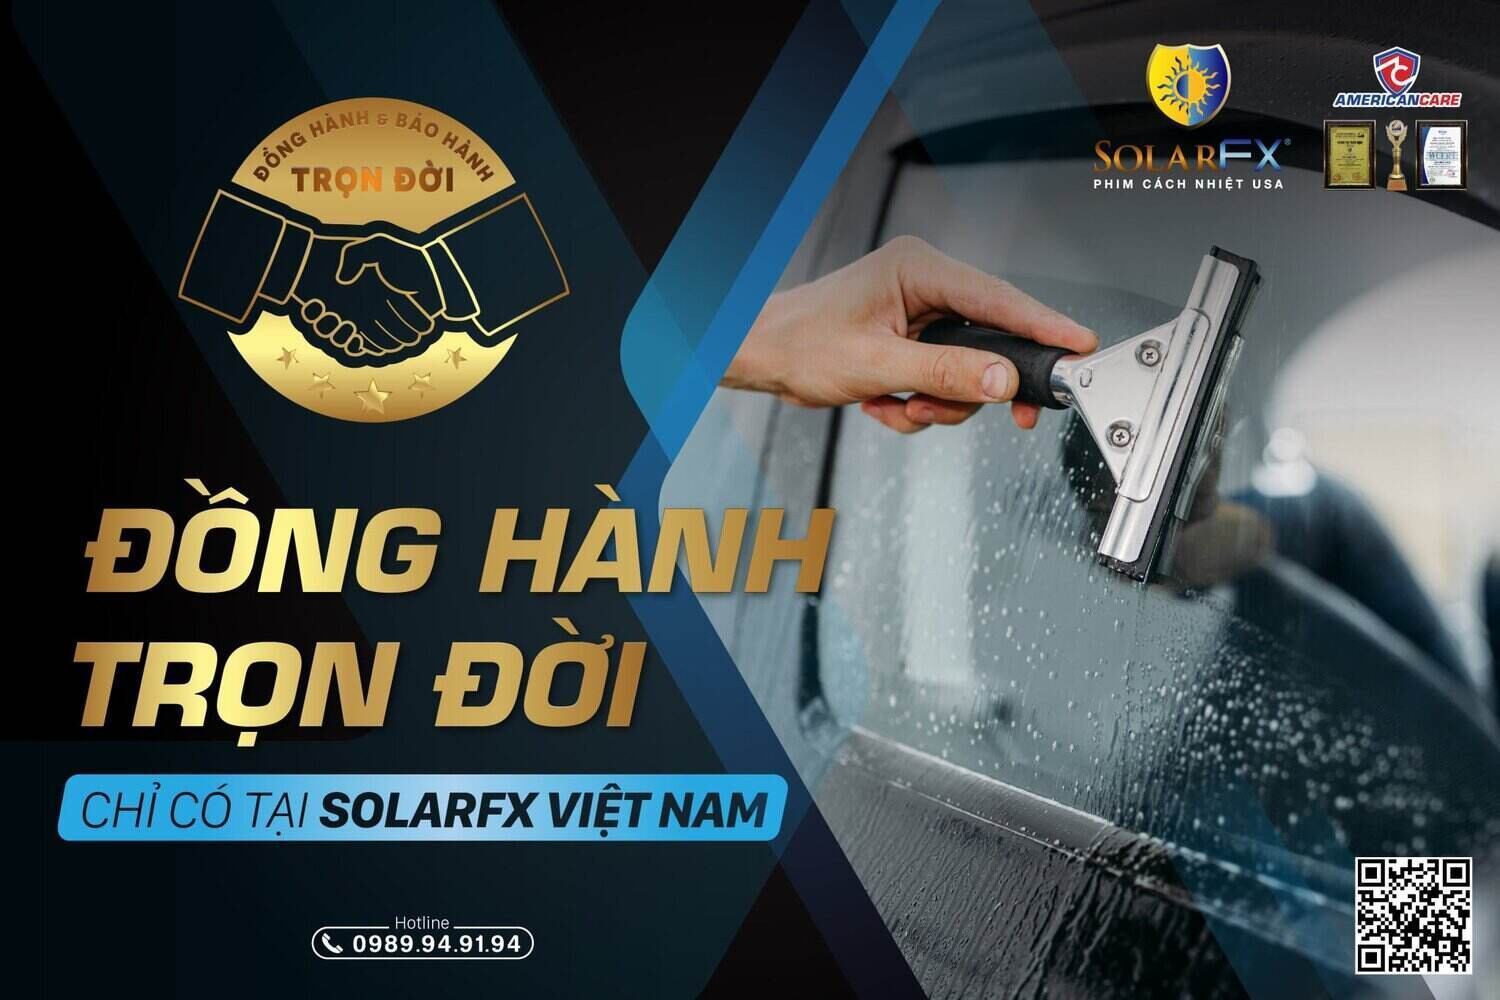 Sản phẩm được Bảo hành và Đồng hành TRỌN ĐỜI chi có tại SolarFX Việt Nam. Ảnh: SolarFX